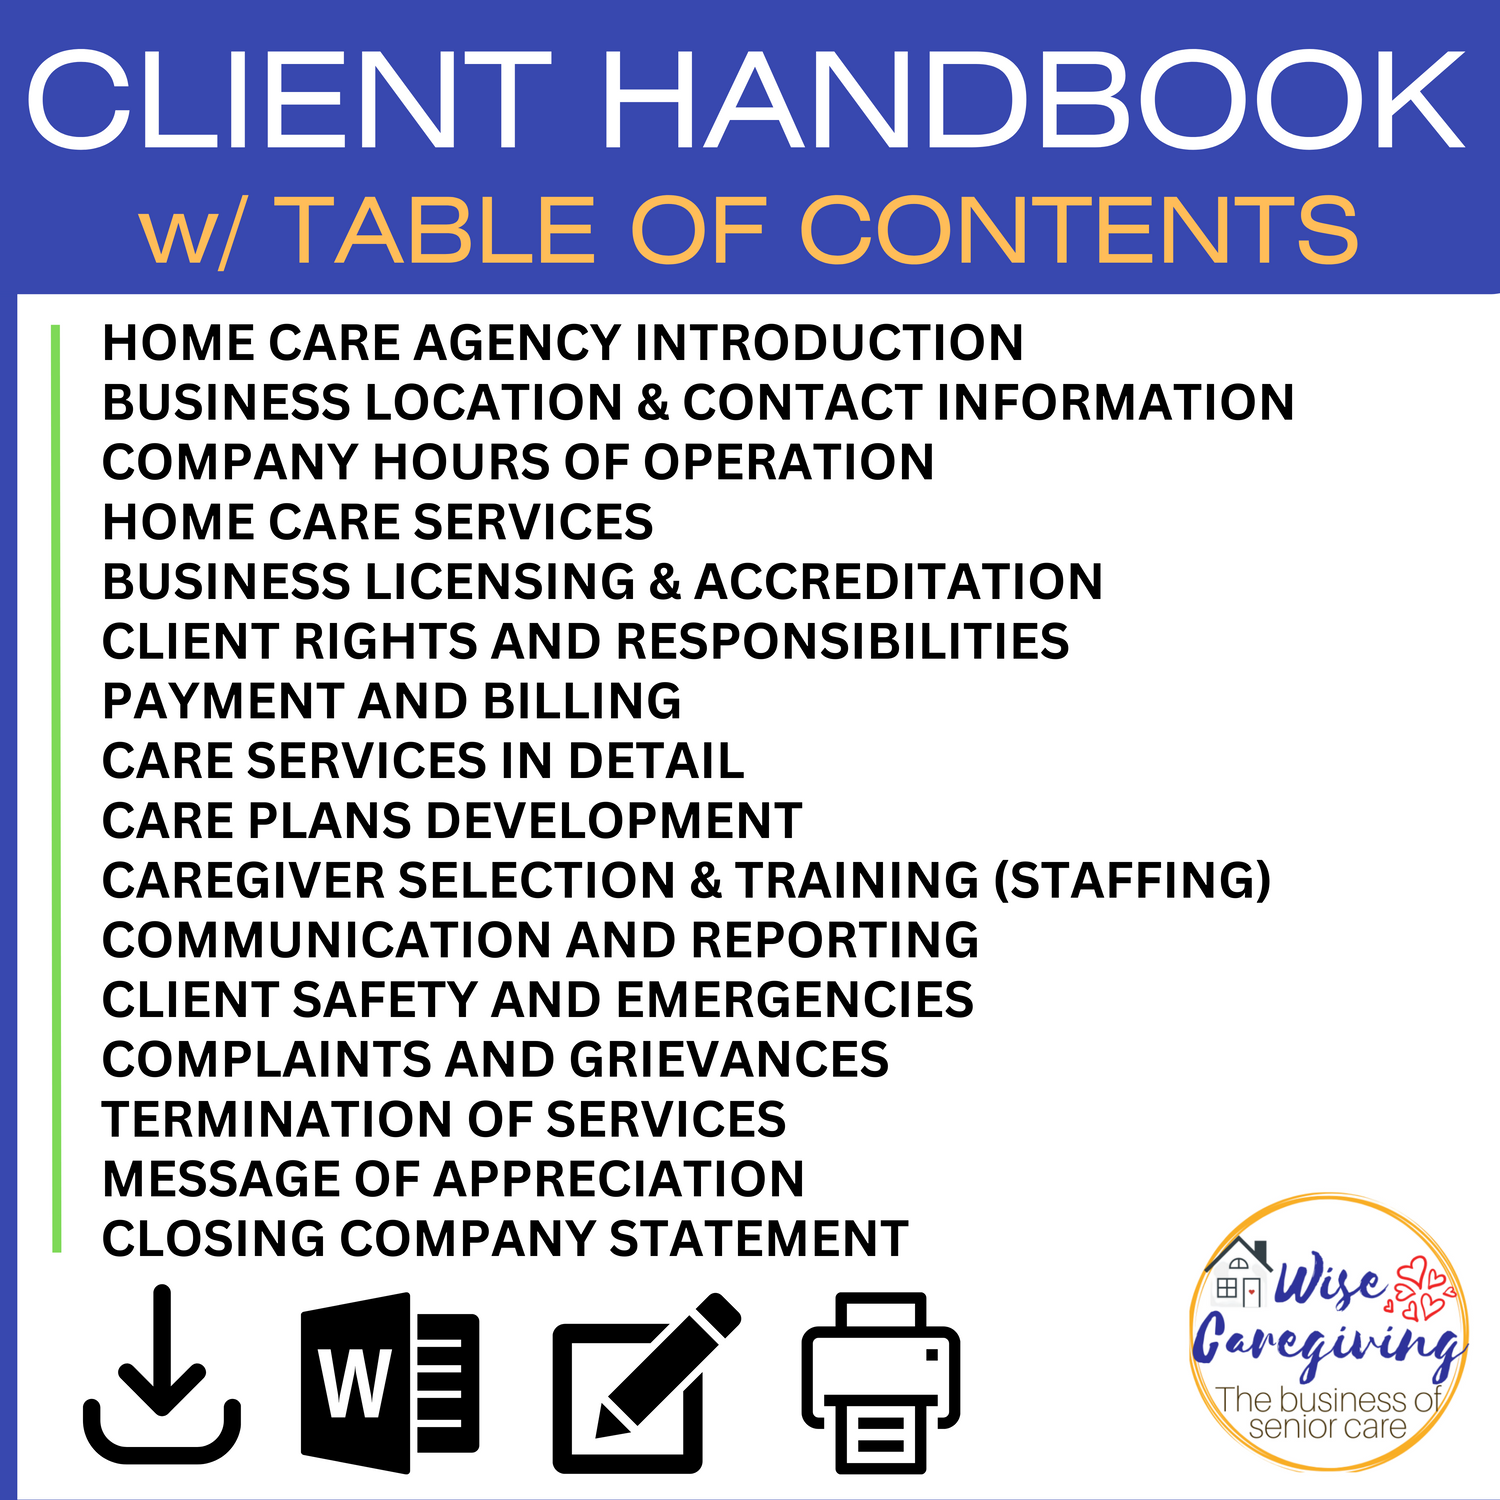 Contents of Client Handbook